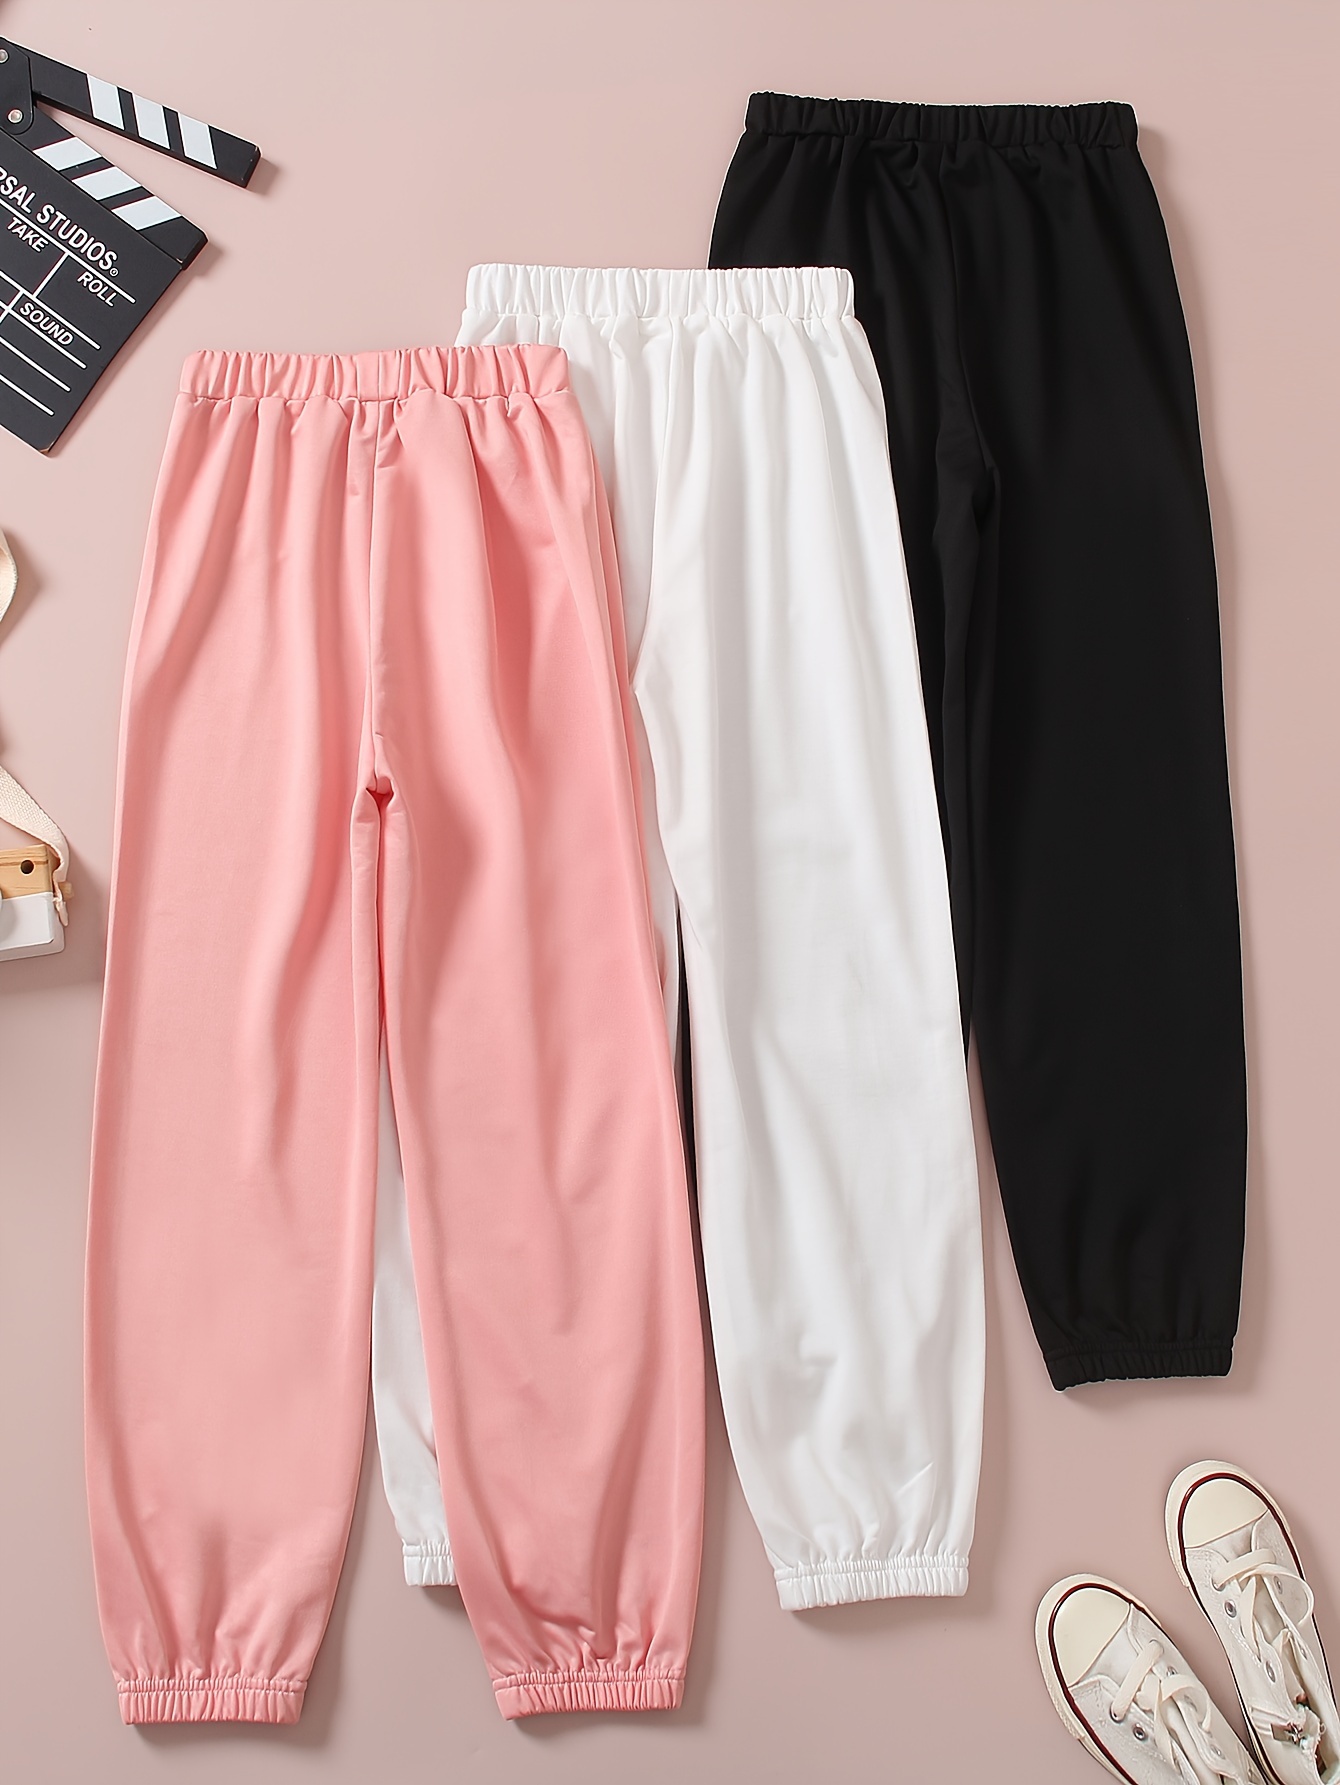 Pink Pants - Sweatpants - Elastic Waistband Pants